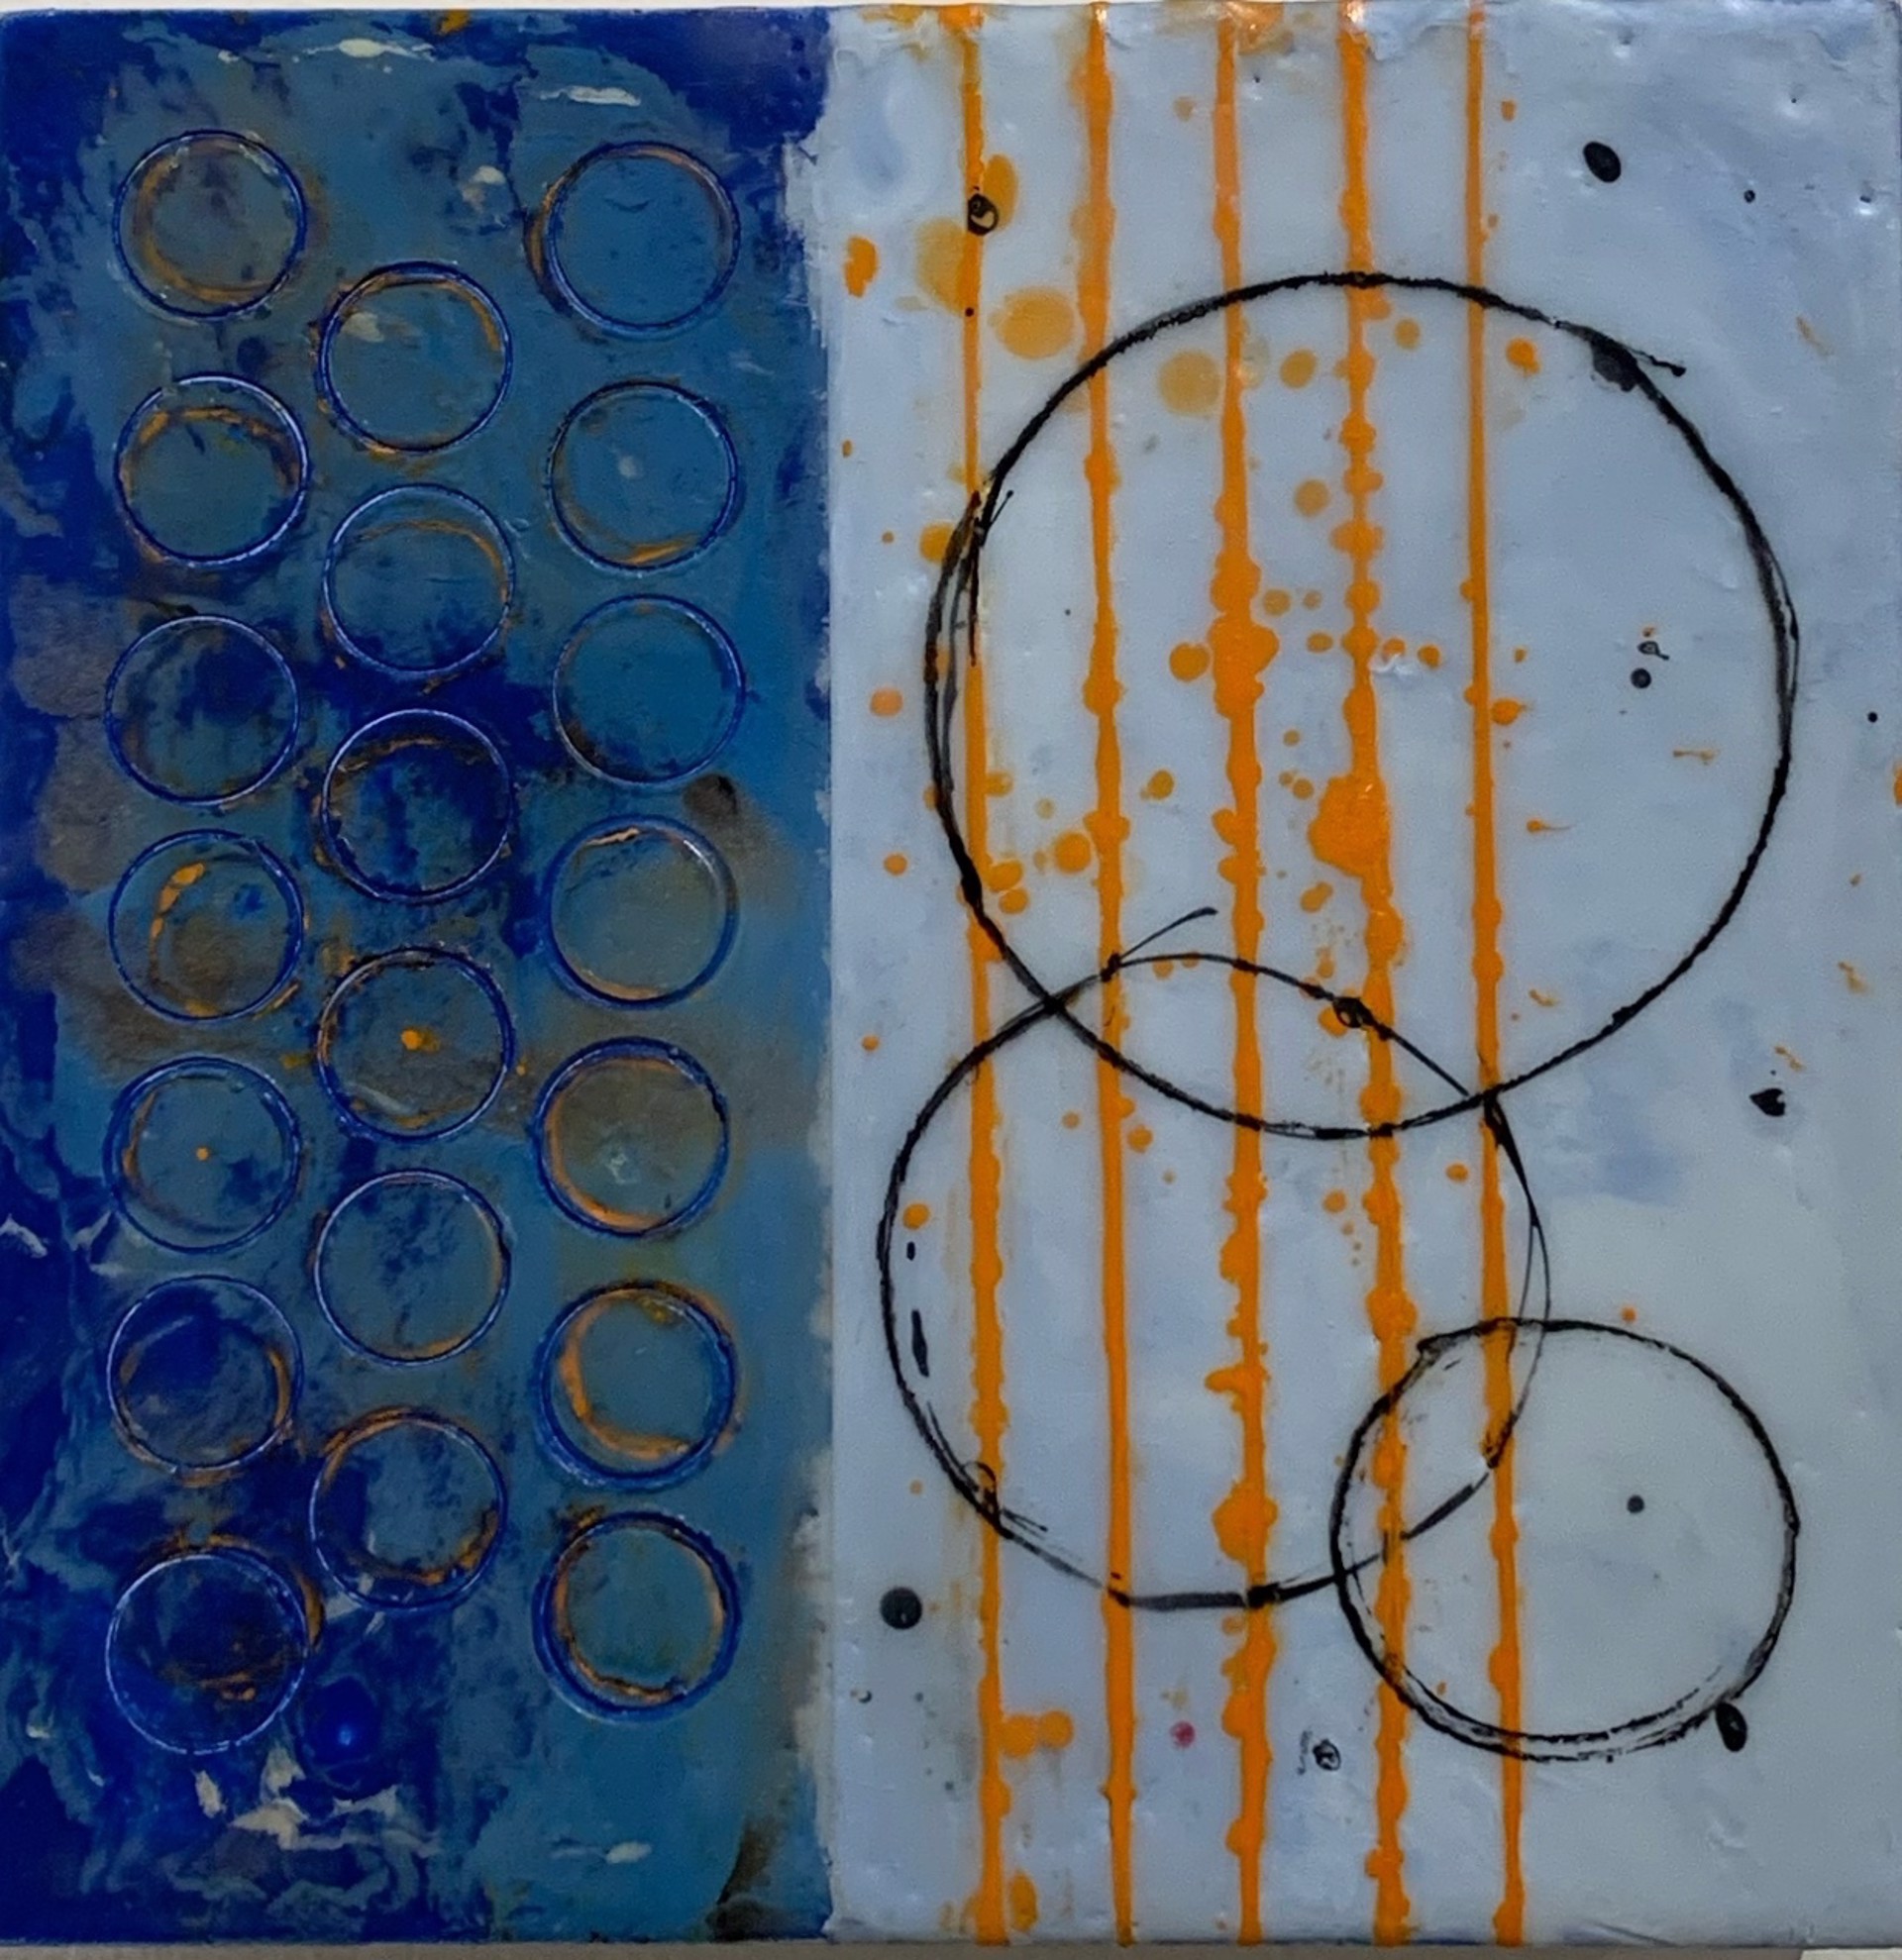 Circles on Water by Deborah Kerr